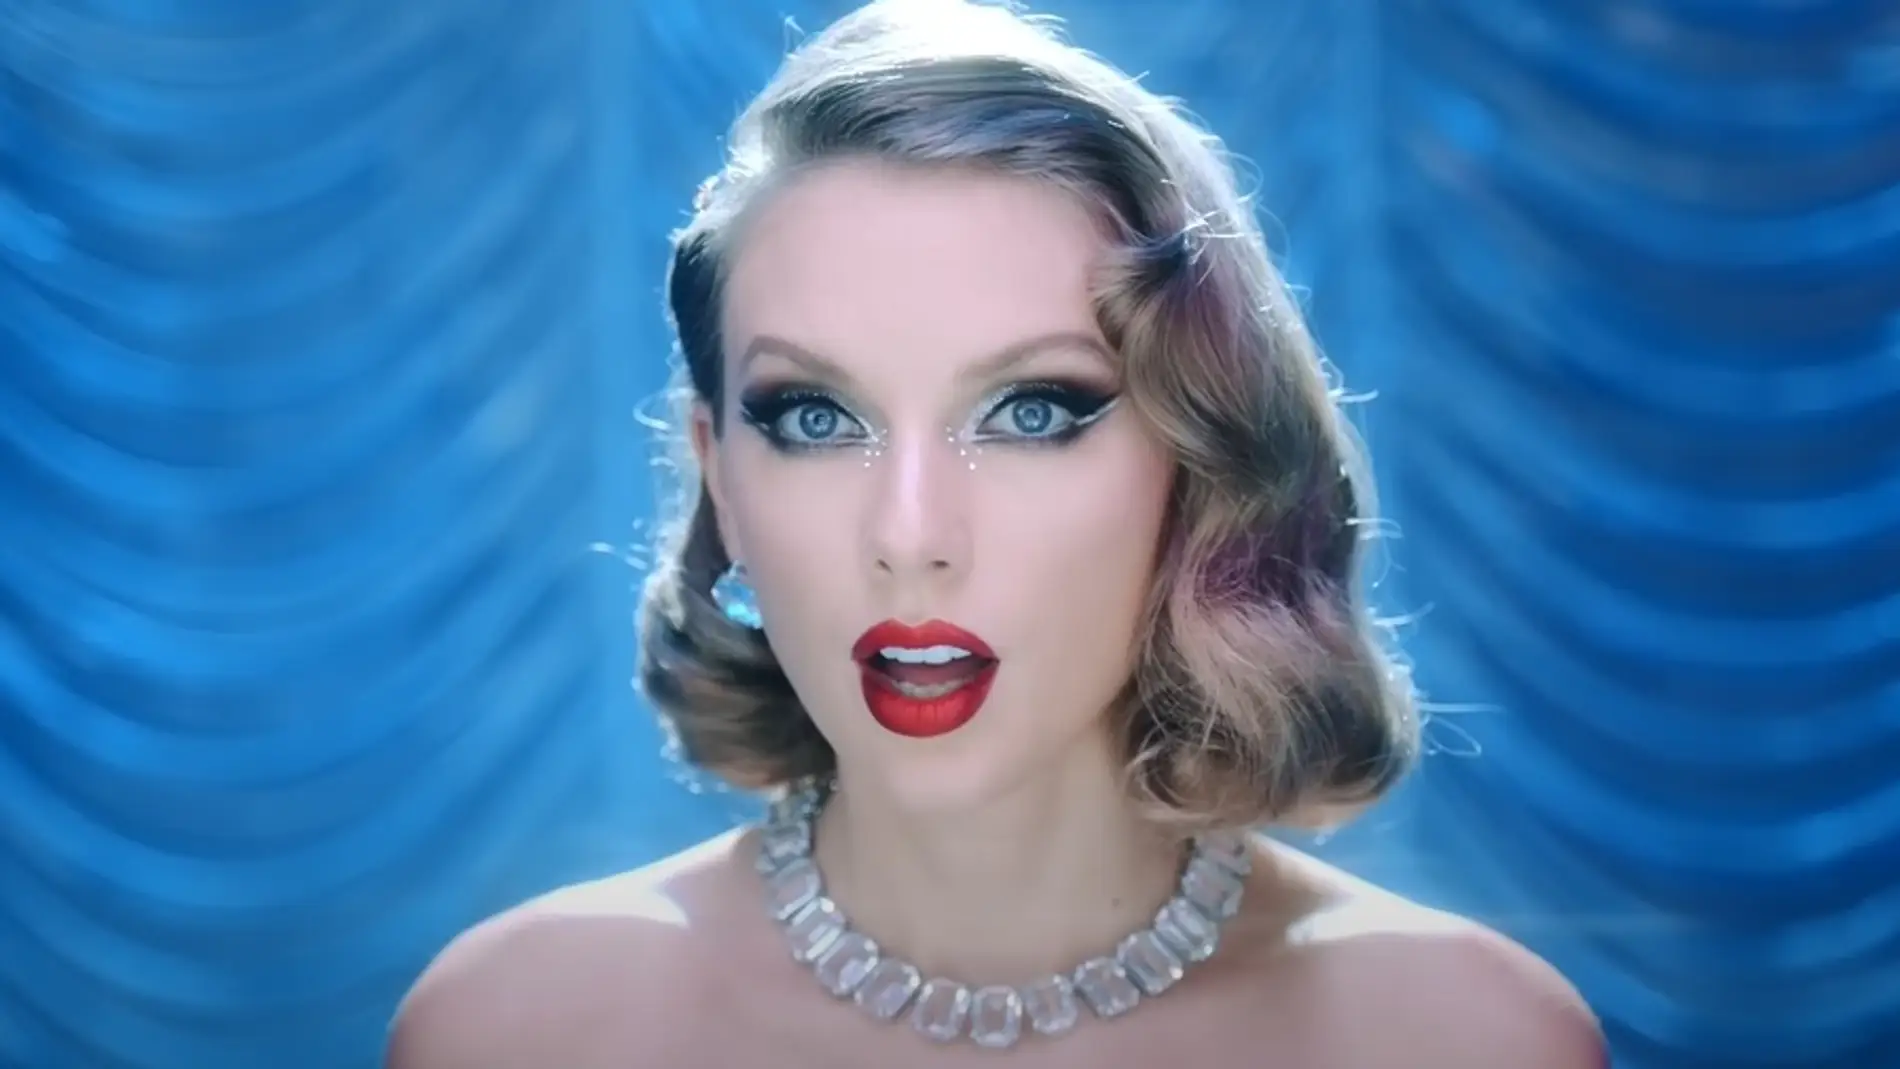 Los easter eggs del videoclip de 'Bejeweled', el cuento de hadas de Taylor Swift 